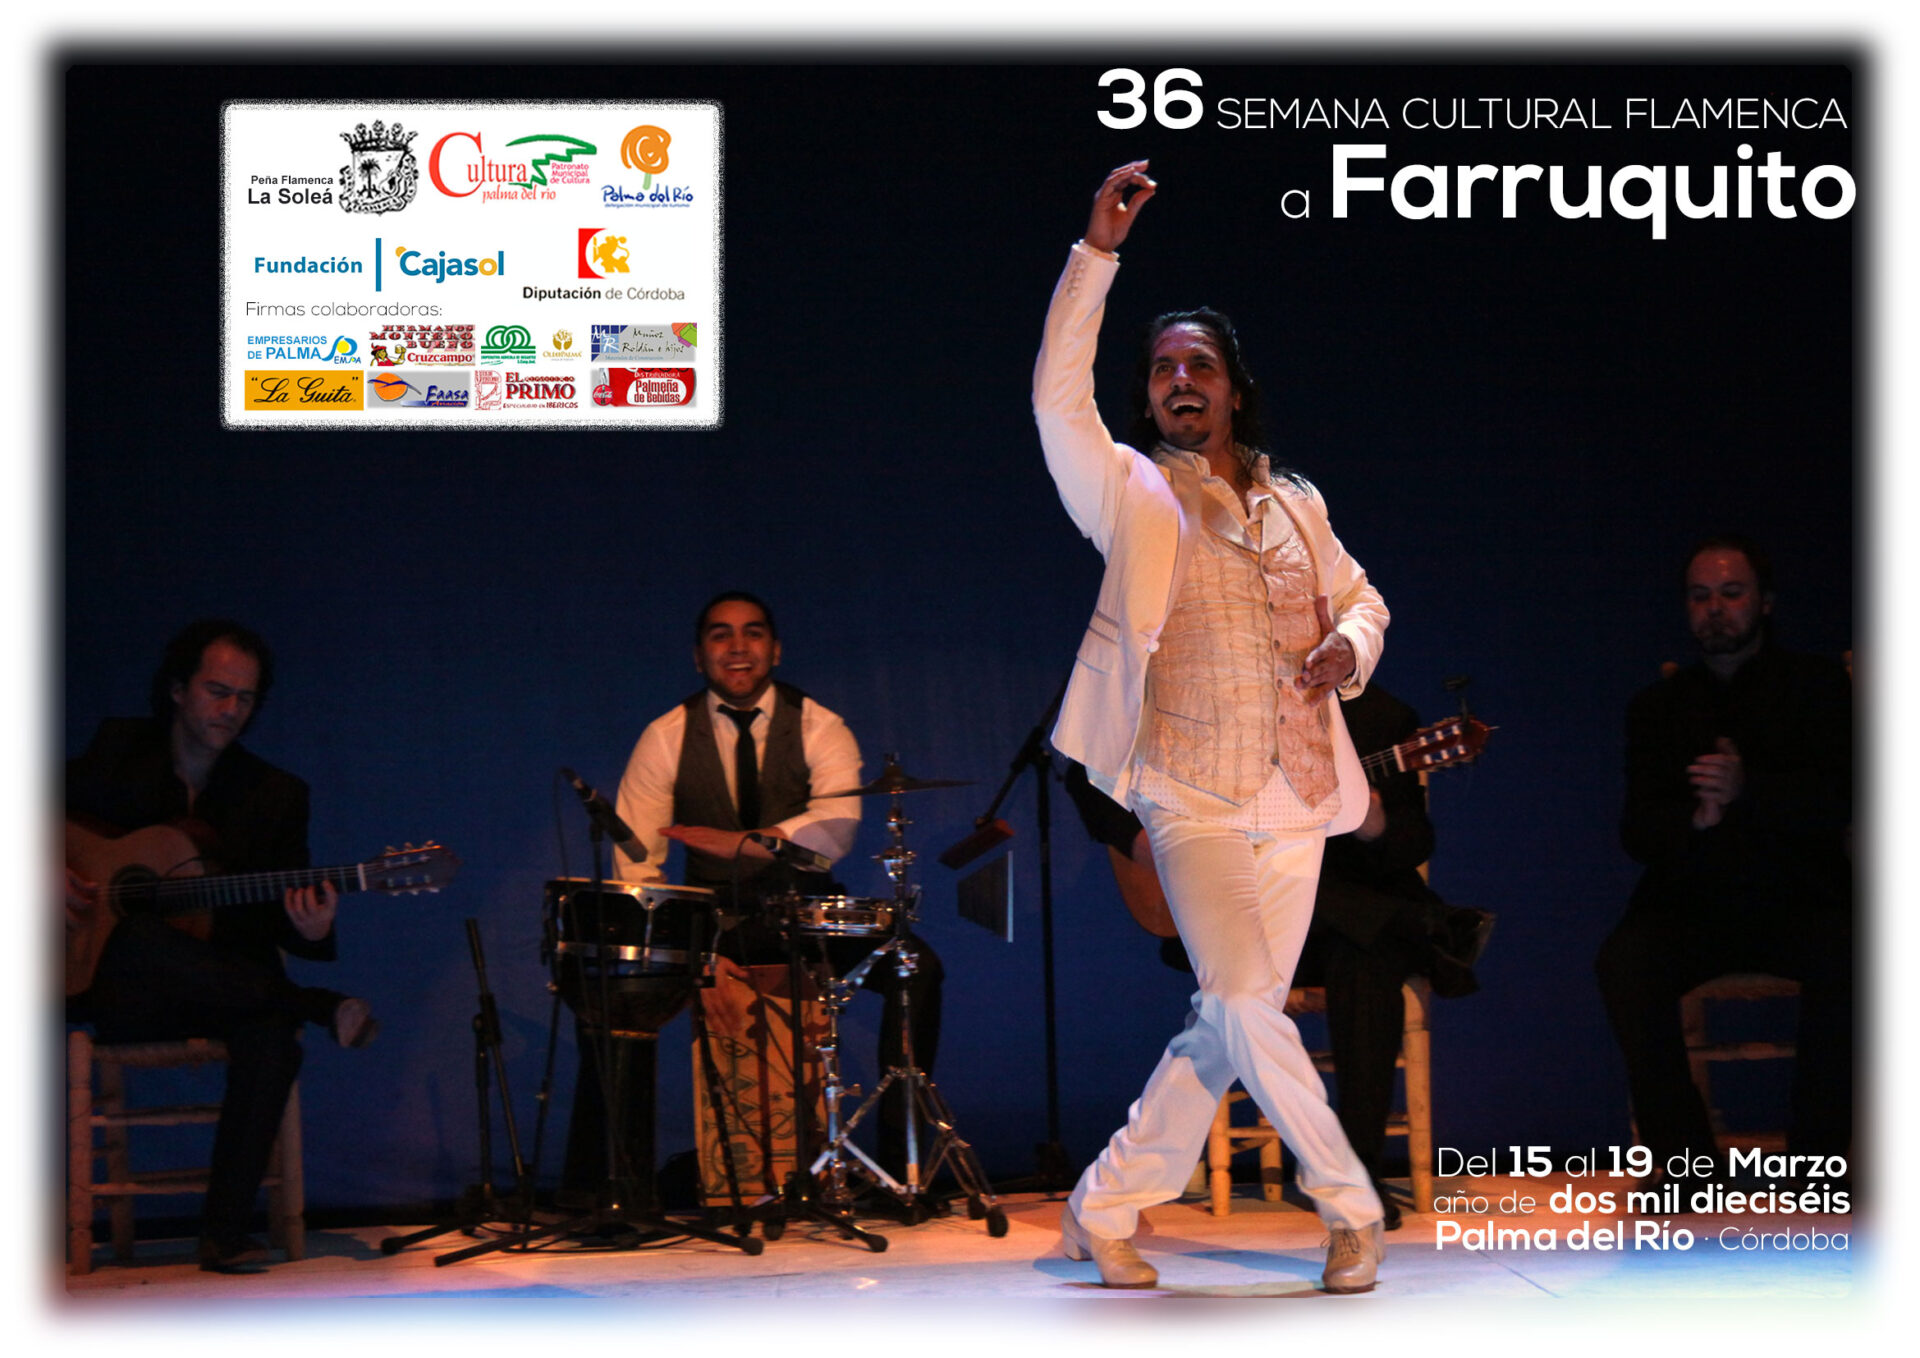 Semana Cultural Flamenca: 36 edición en homenaje a Farruquito 1